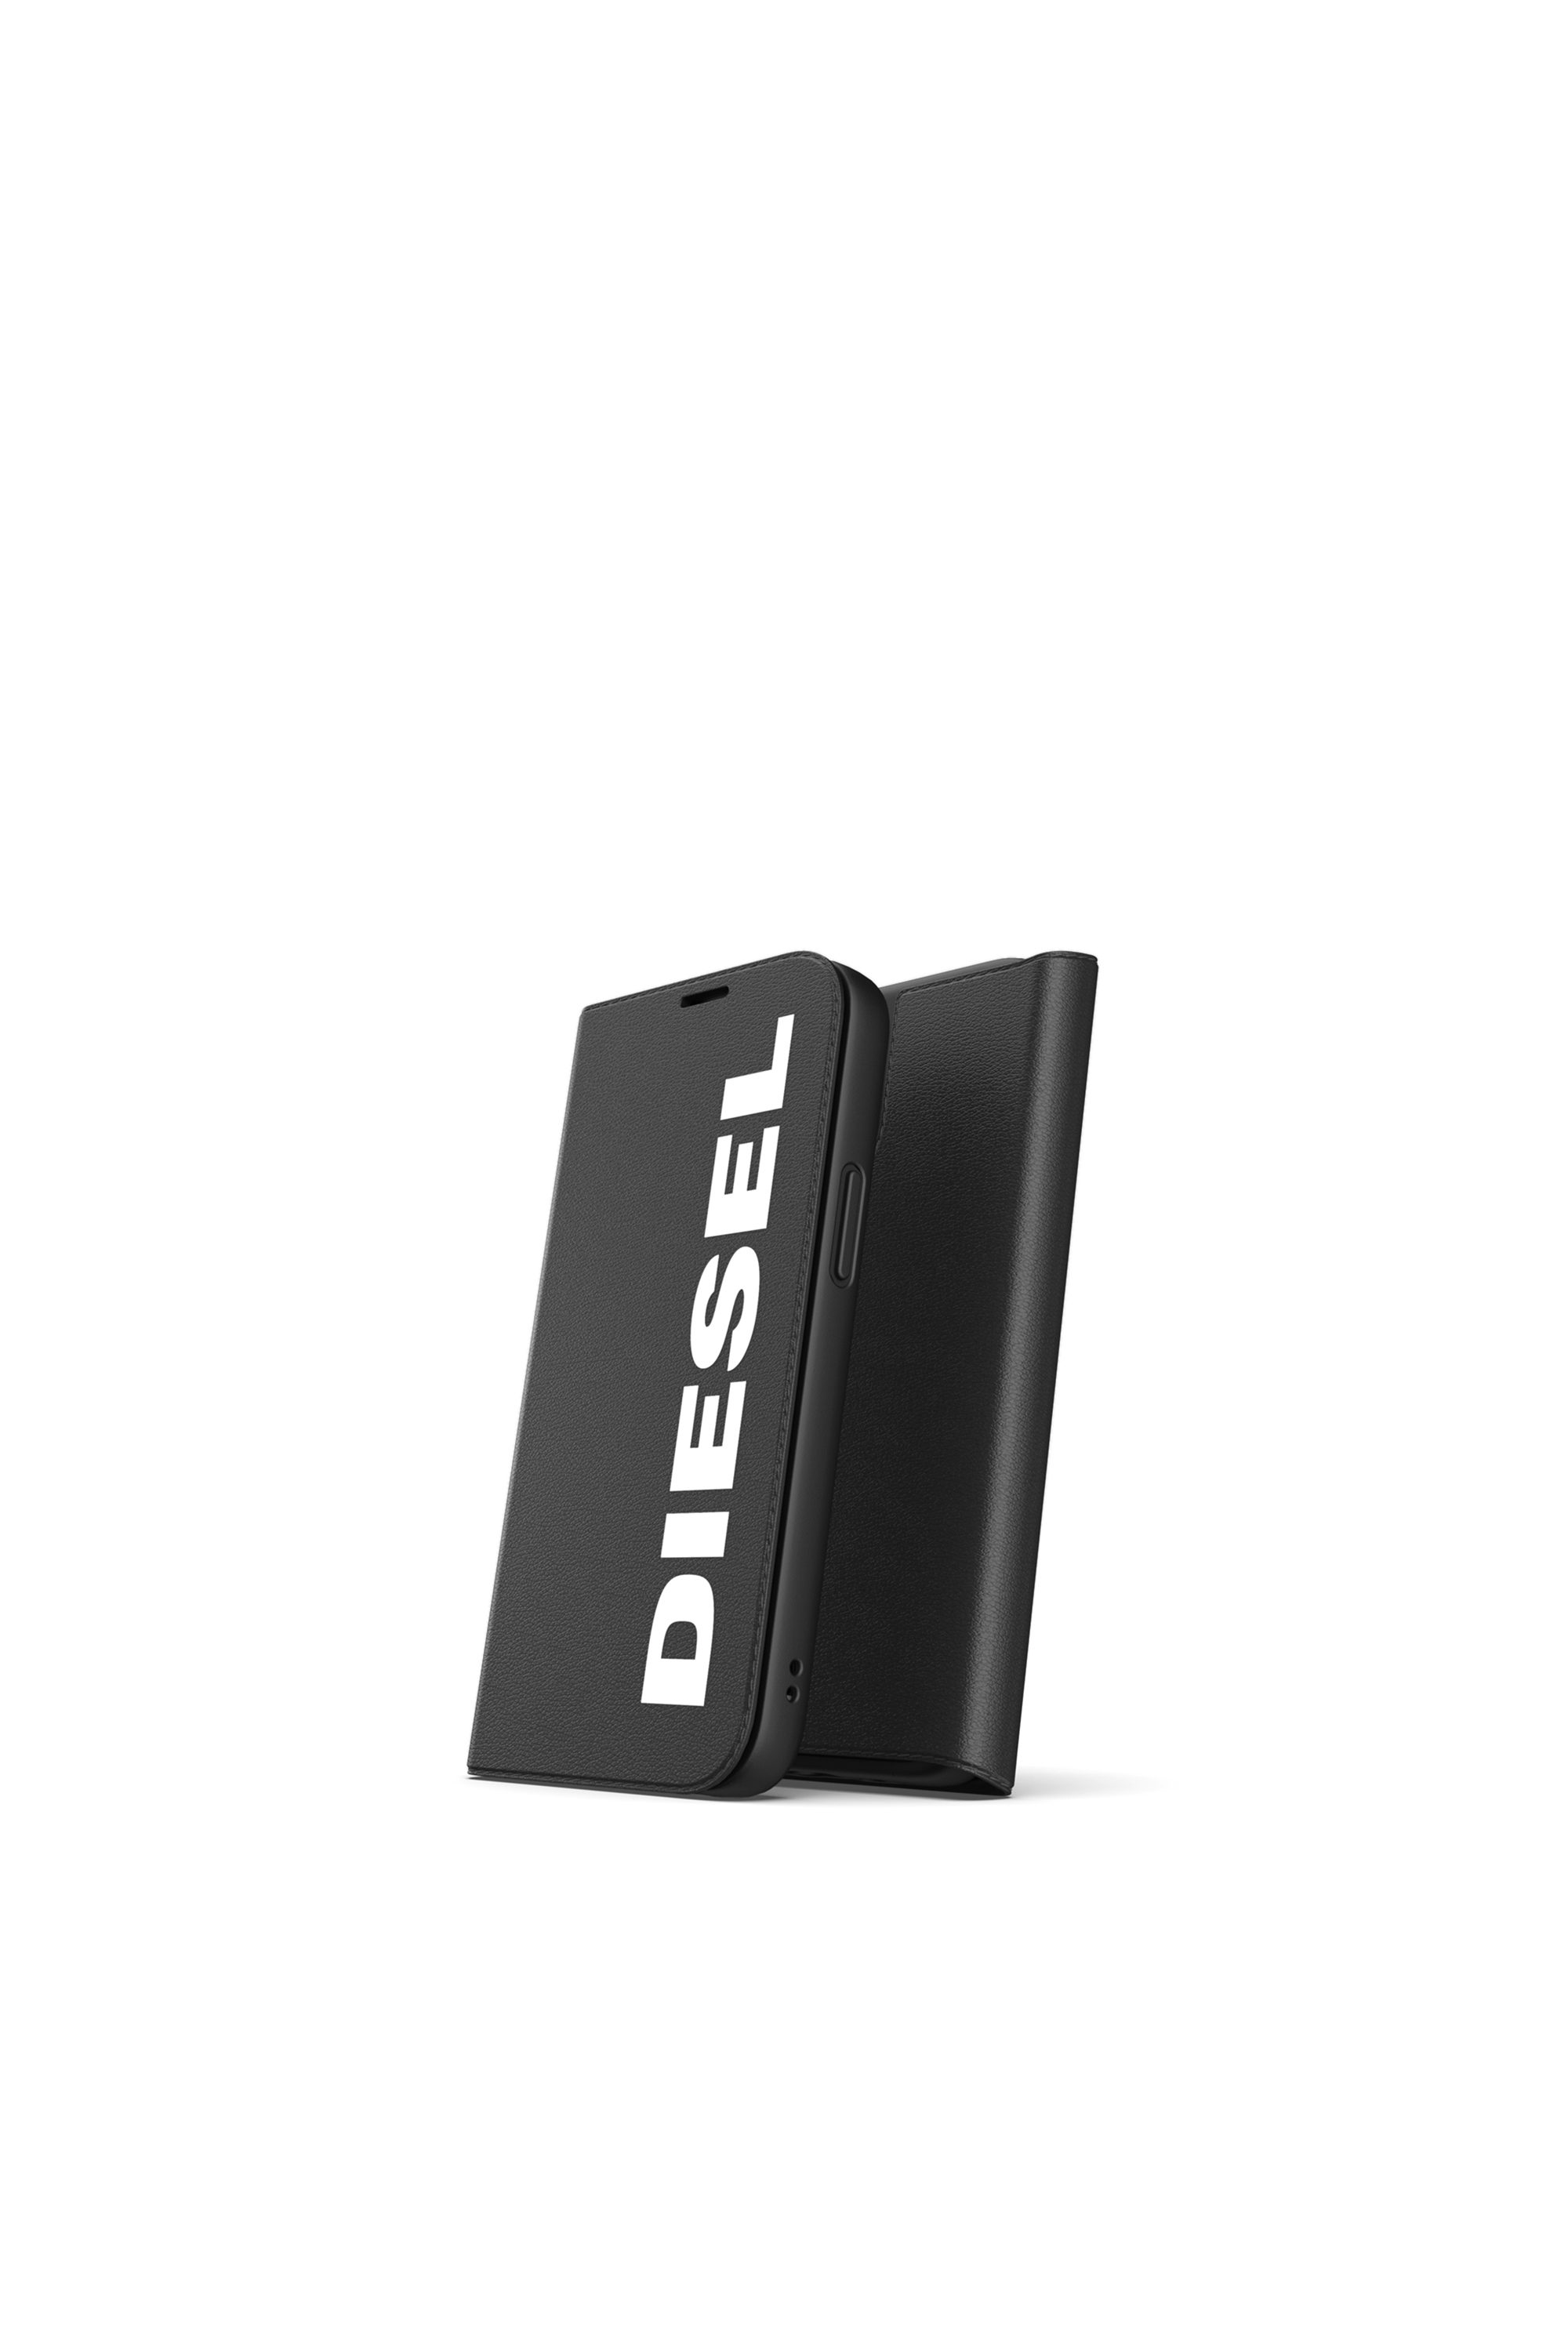 Diesel - 42485, Black - Image 3